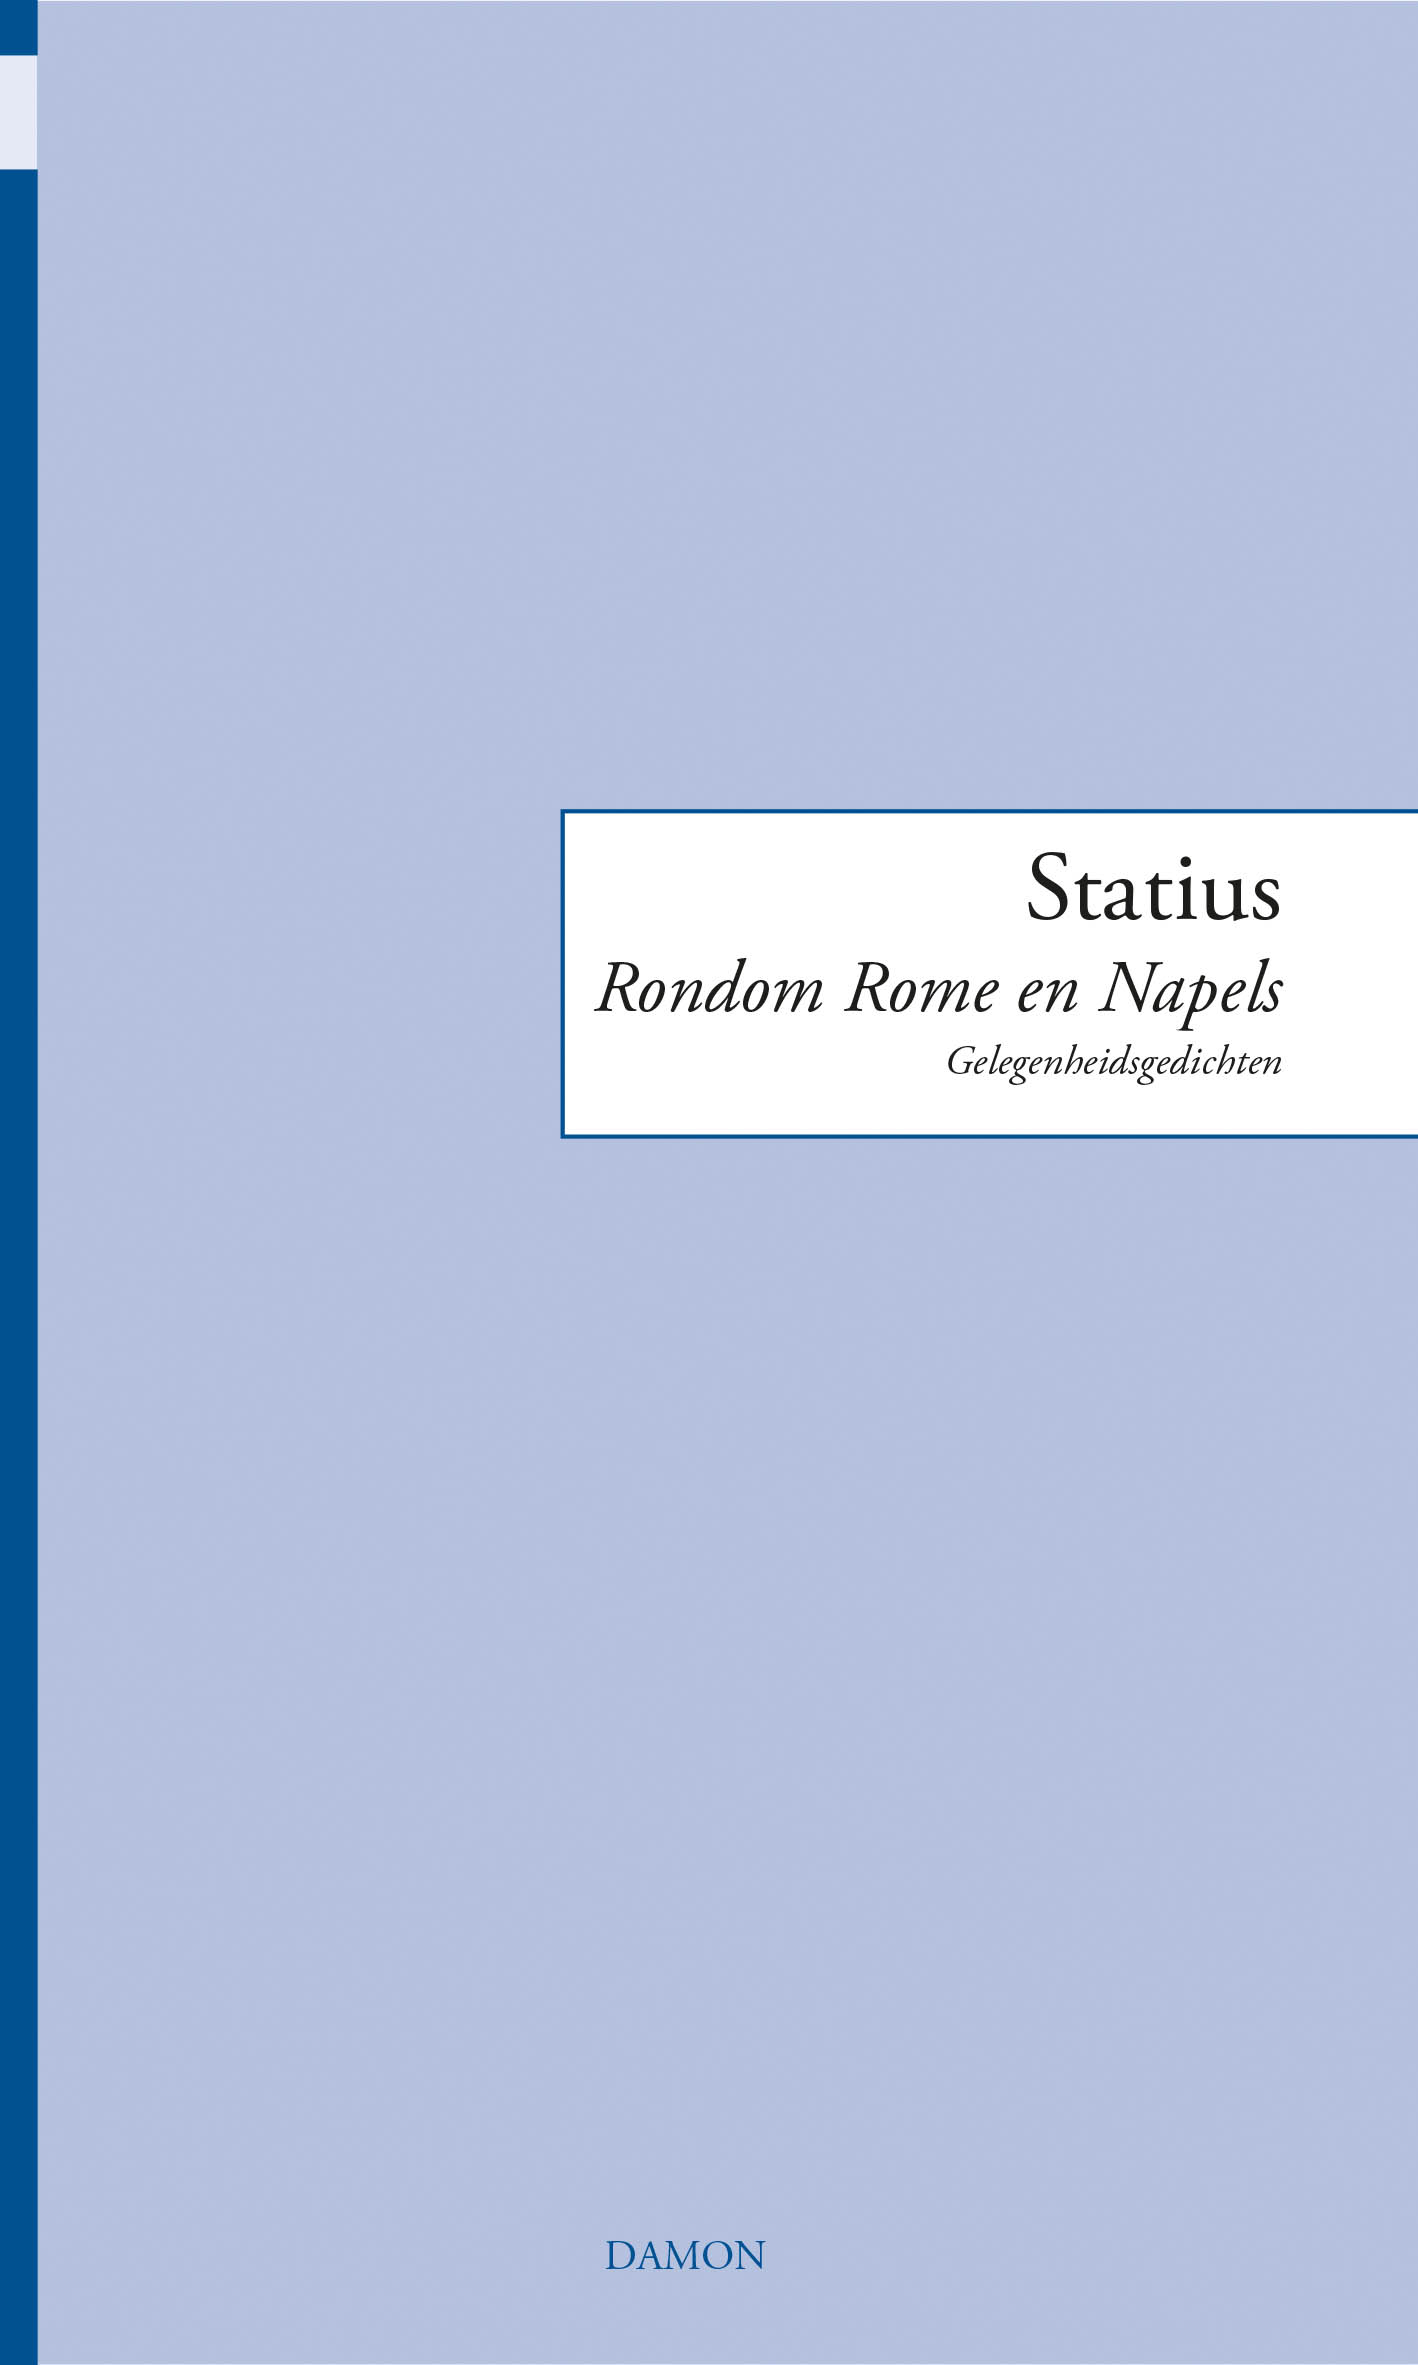 Statius, Rondom Rome en Napels